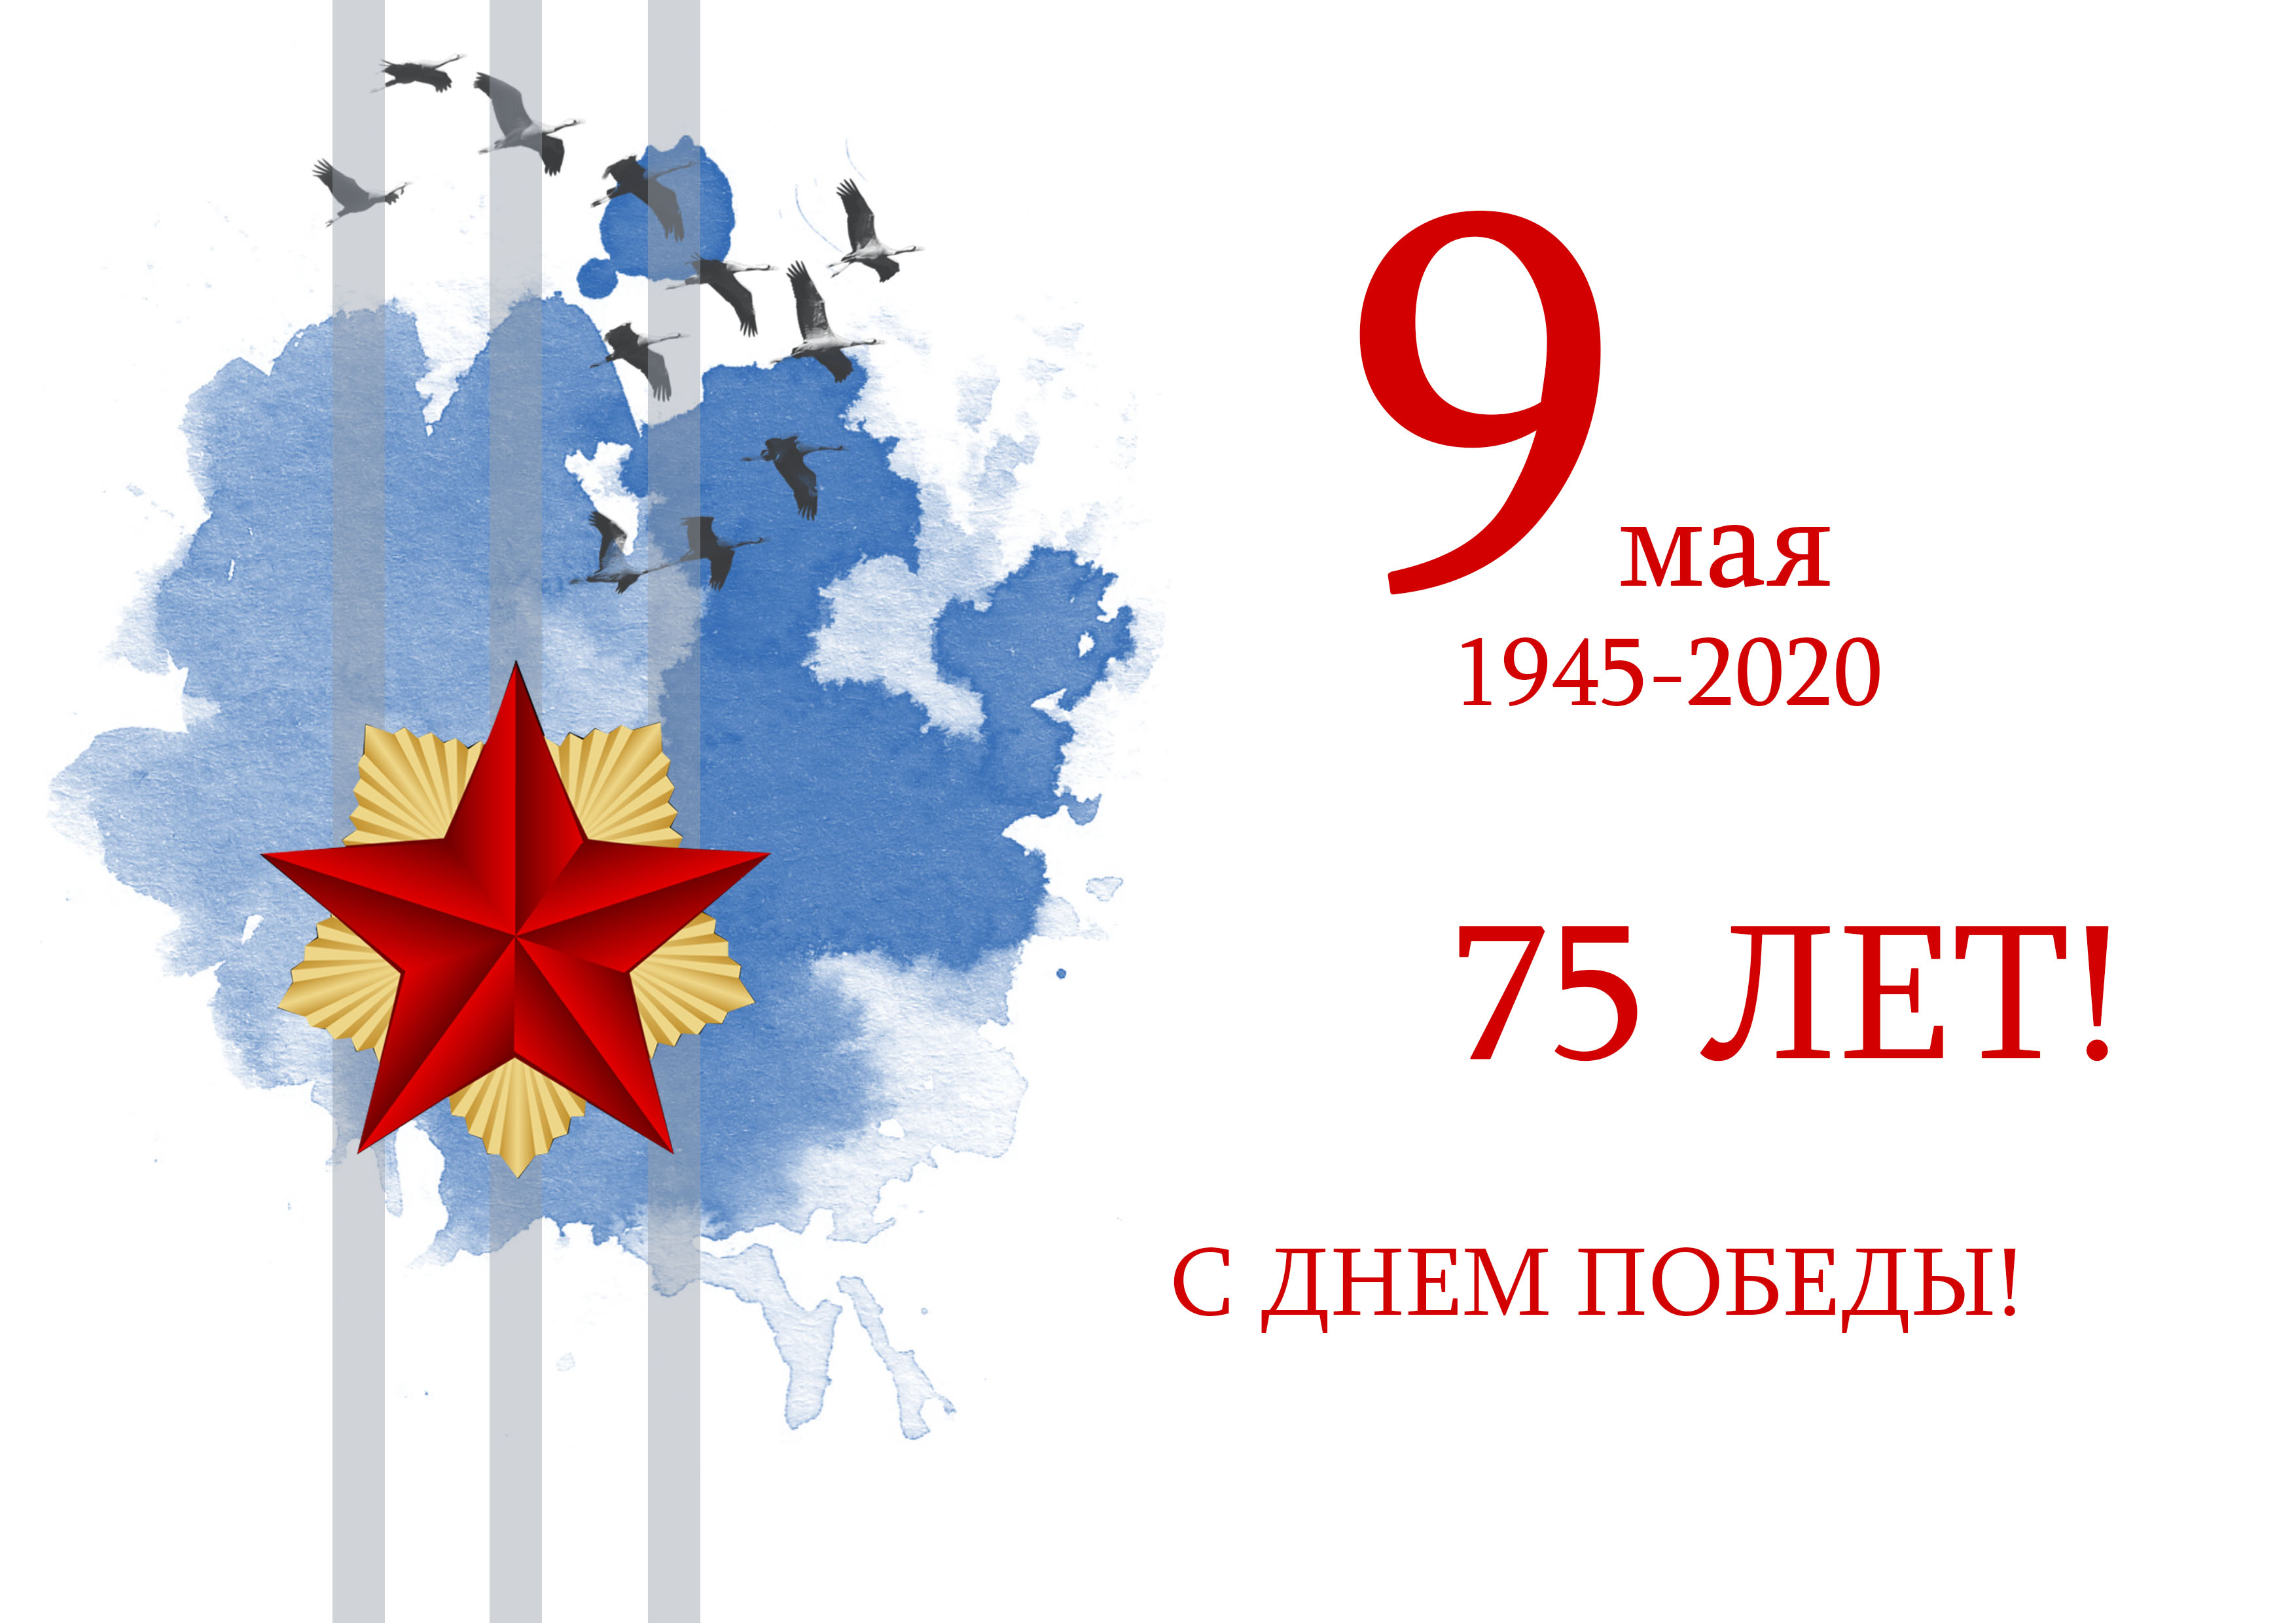 Логотип празднования дня Победы